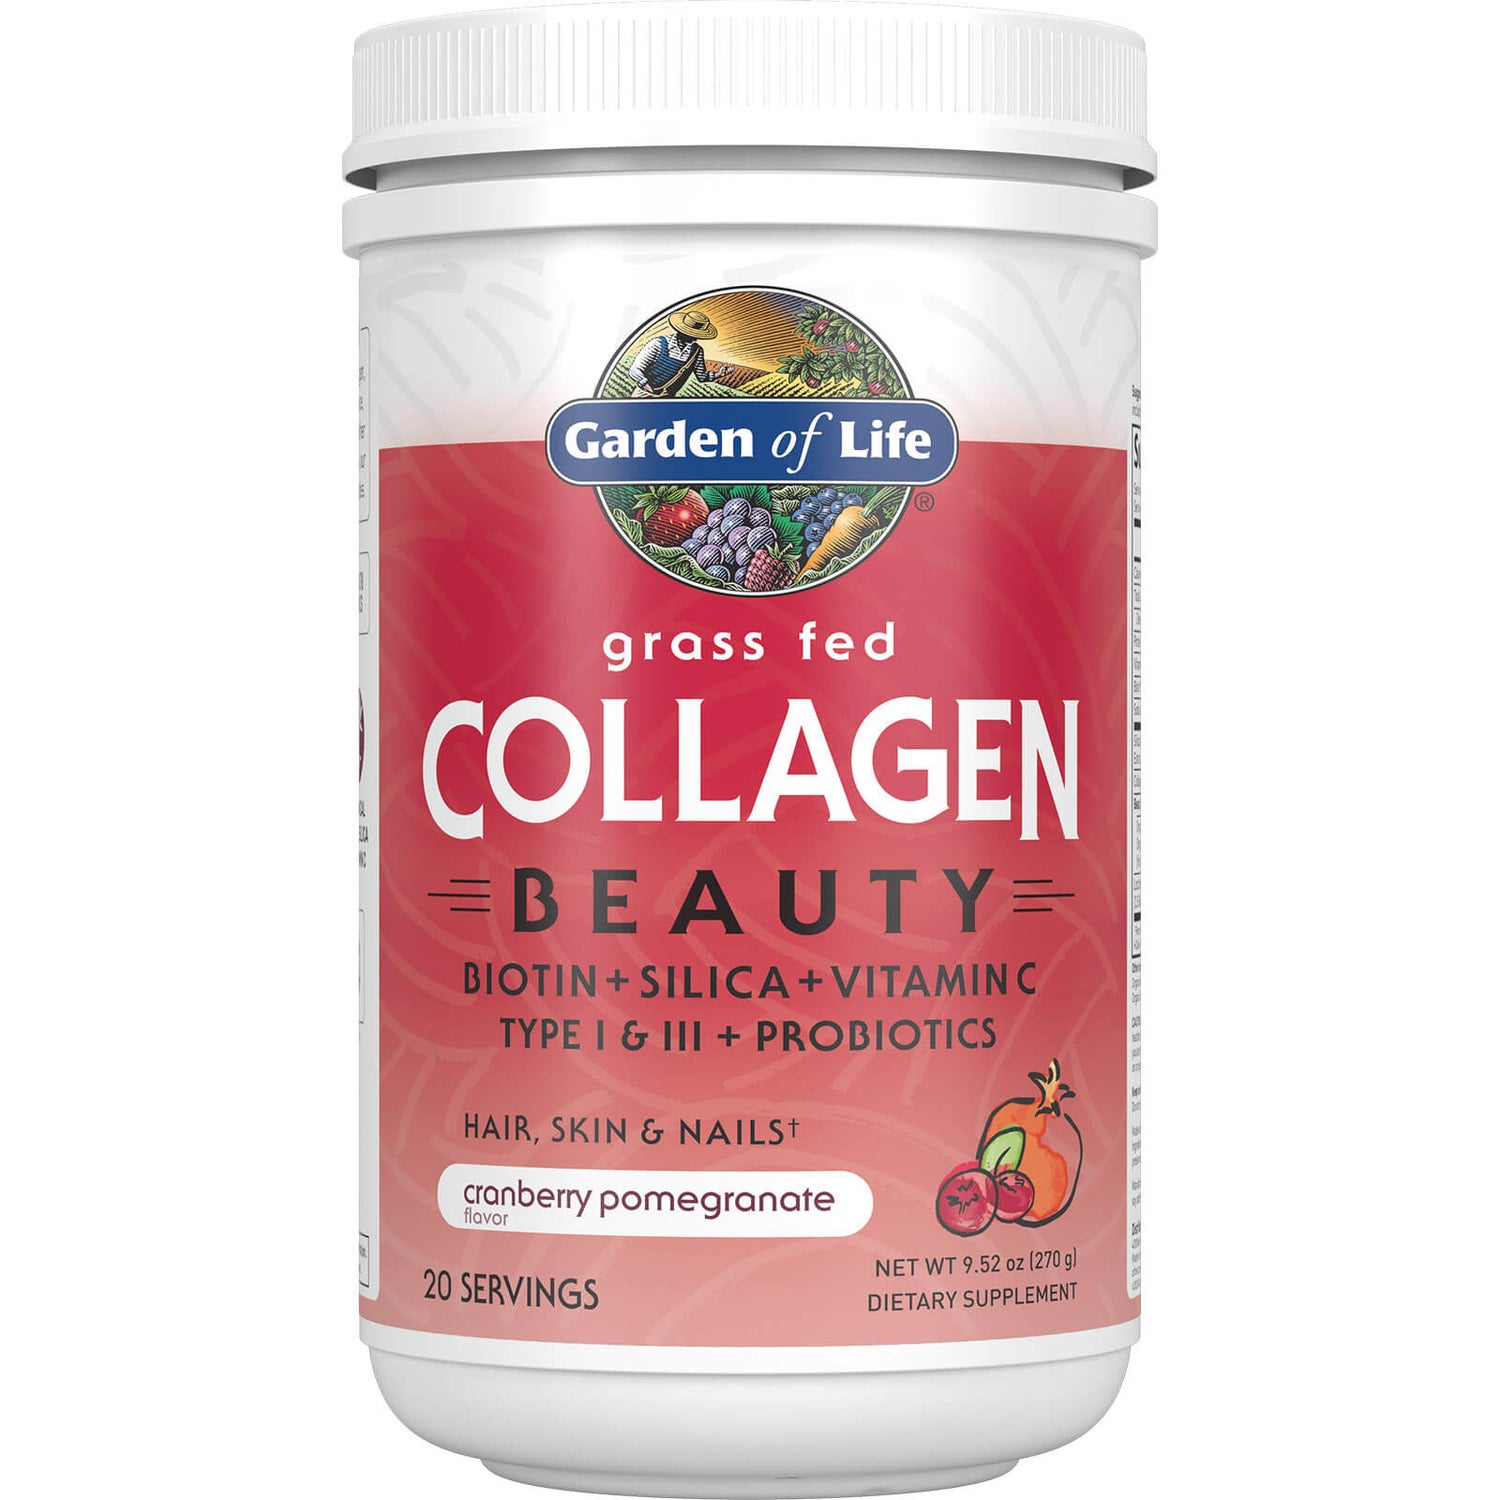 Collagene di bellezza in polvere - Mirtillo rosso e melograno - 270 g